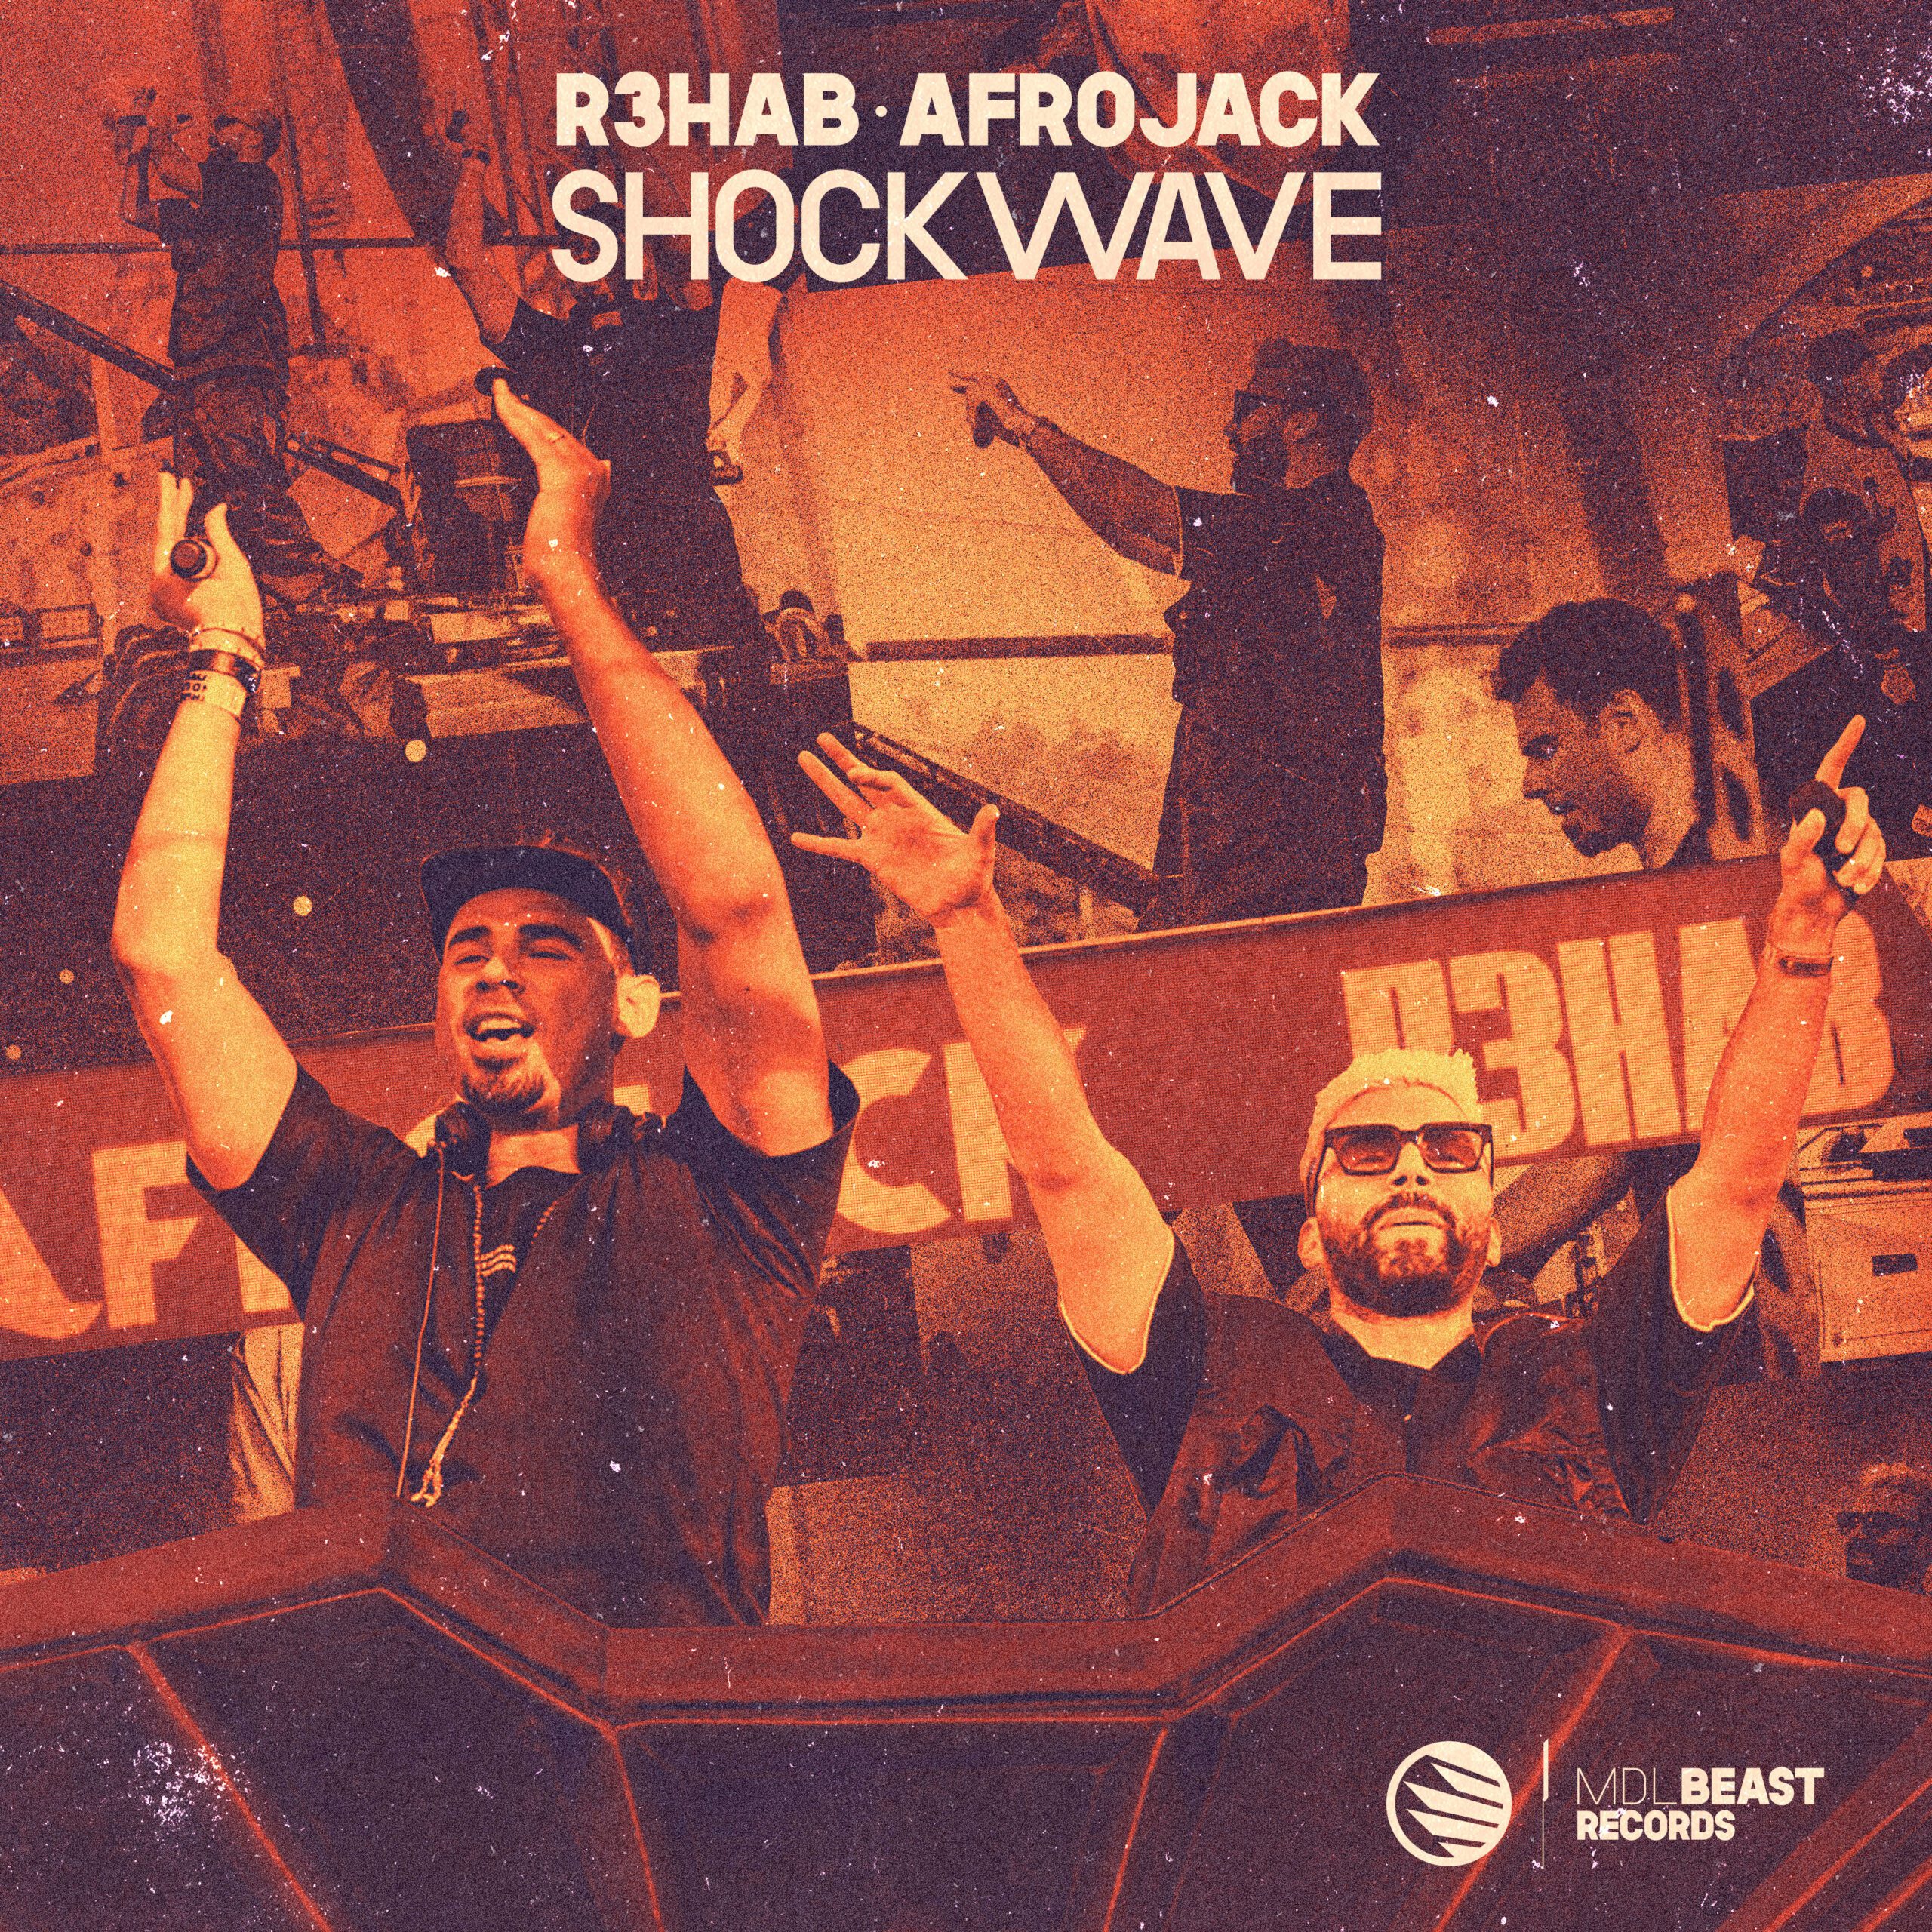 R3HAB & AFROJACK – Shockwave